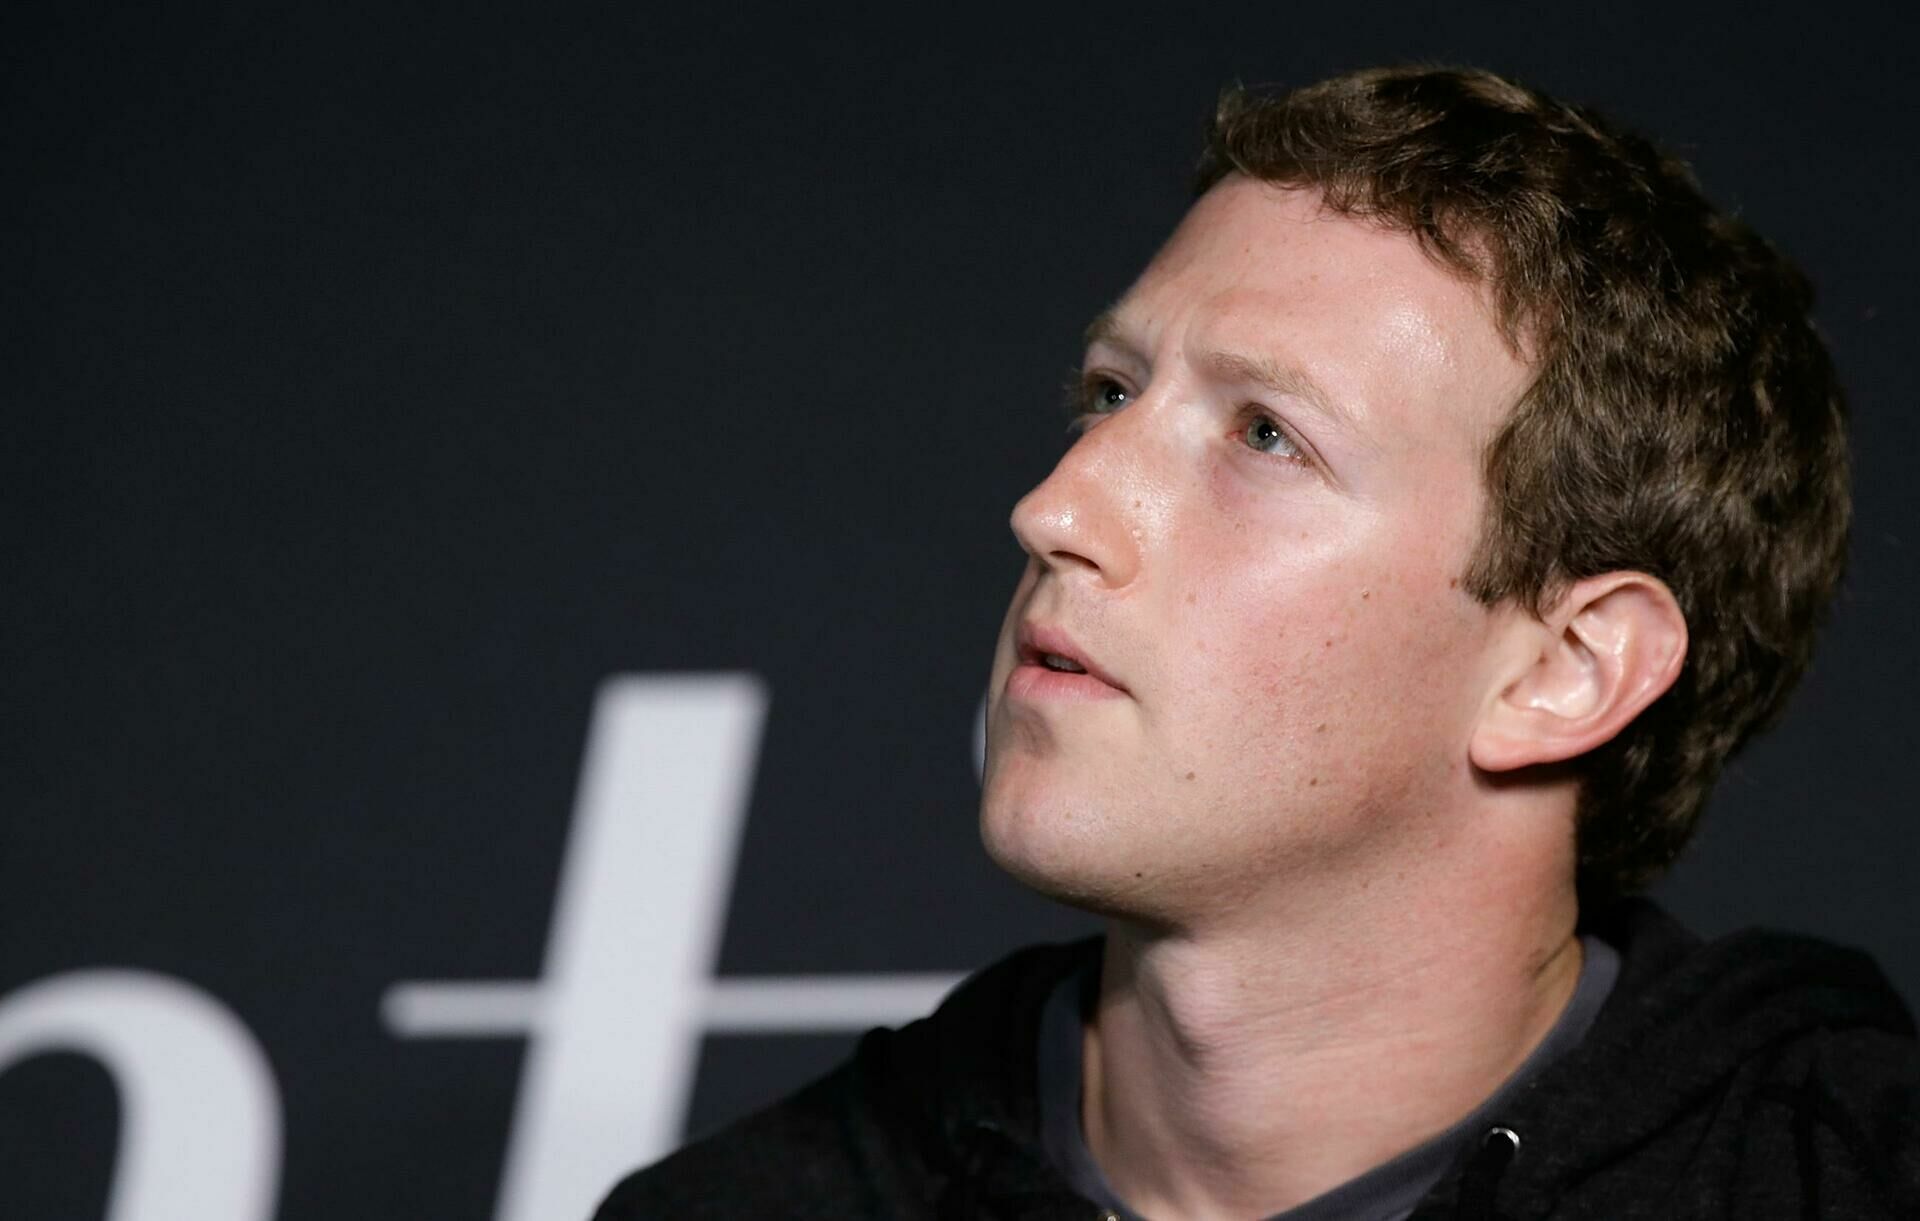 Russia demands to declare bankrupt the head of Facebook Mark Zuckerberg